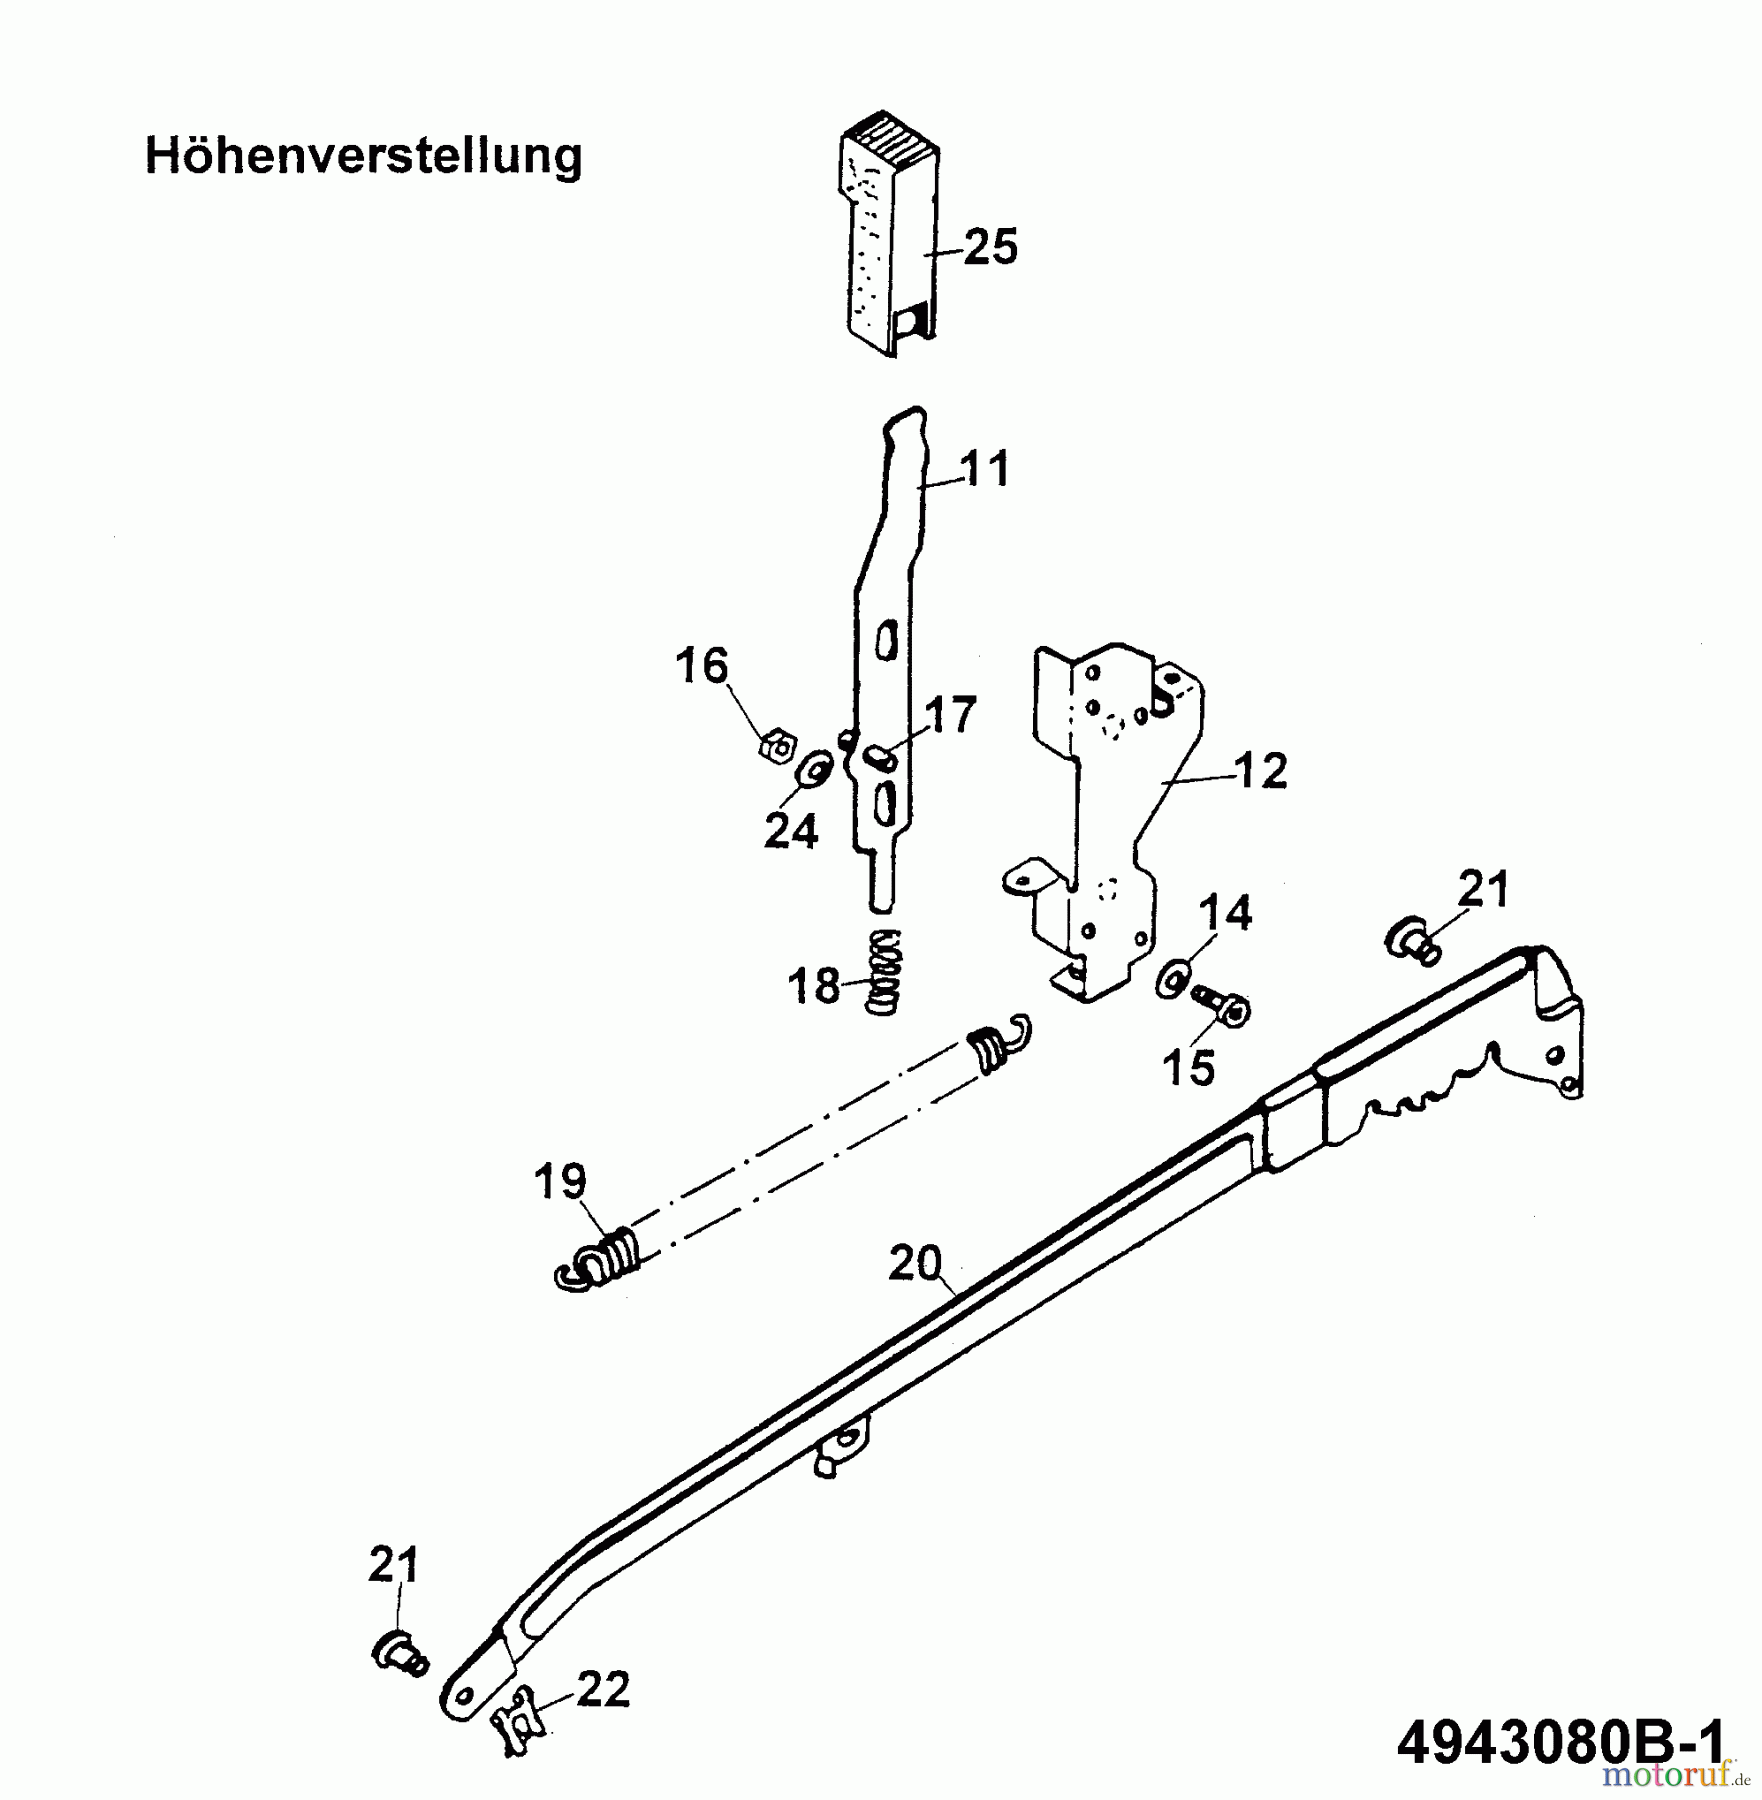  Wolf-Garten Battery mower 2.42 ACN 4942080 Series B  (1999) Cutting hight adjustment